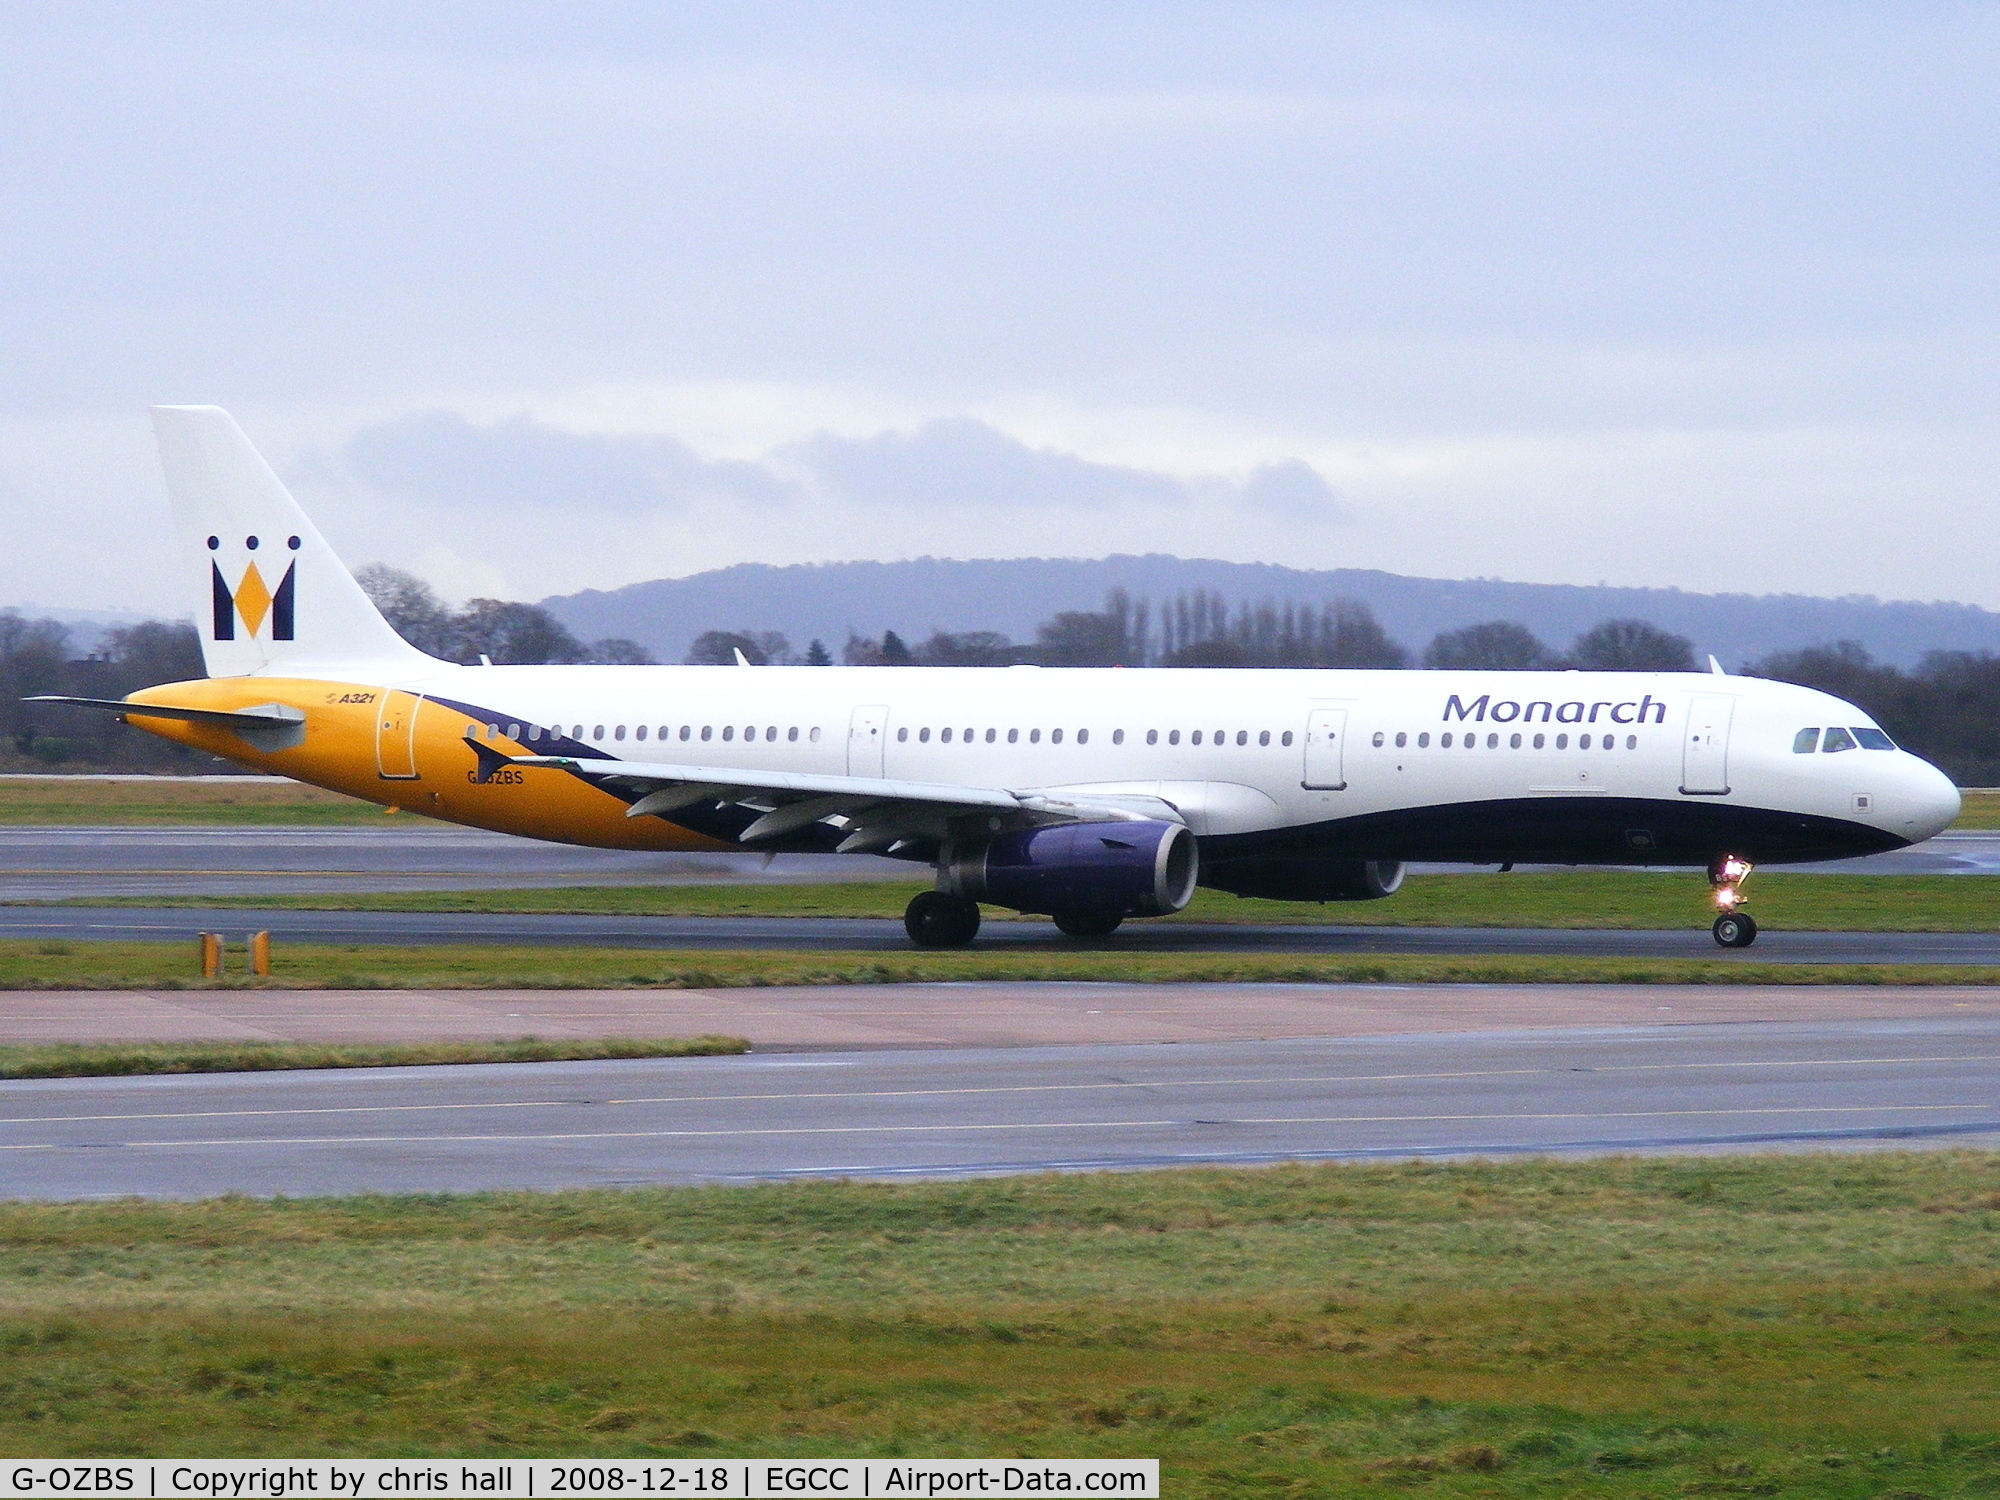 G-OZBS, 2001 Airbus A321-231 C/N 1428, Monarch